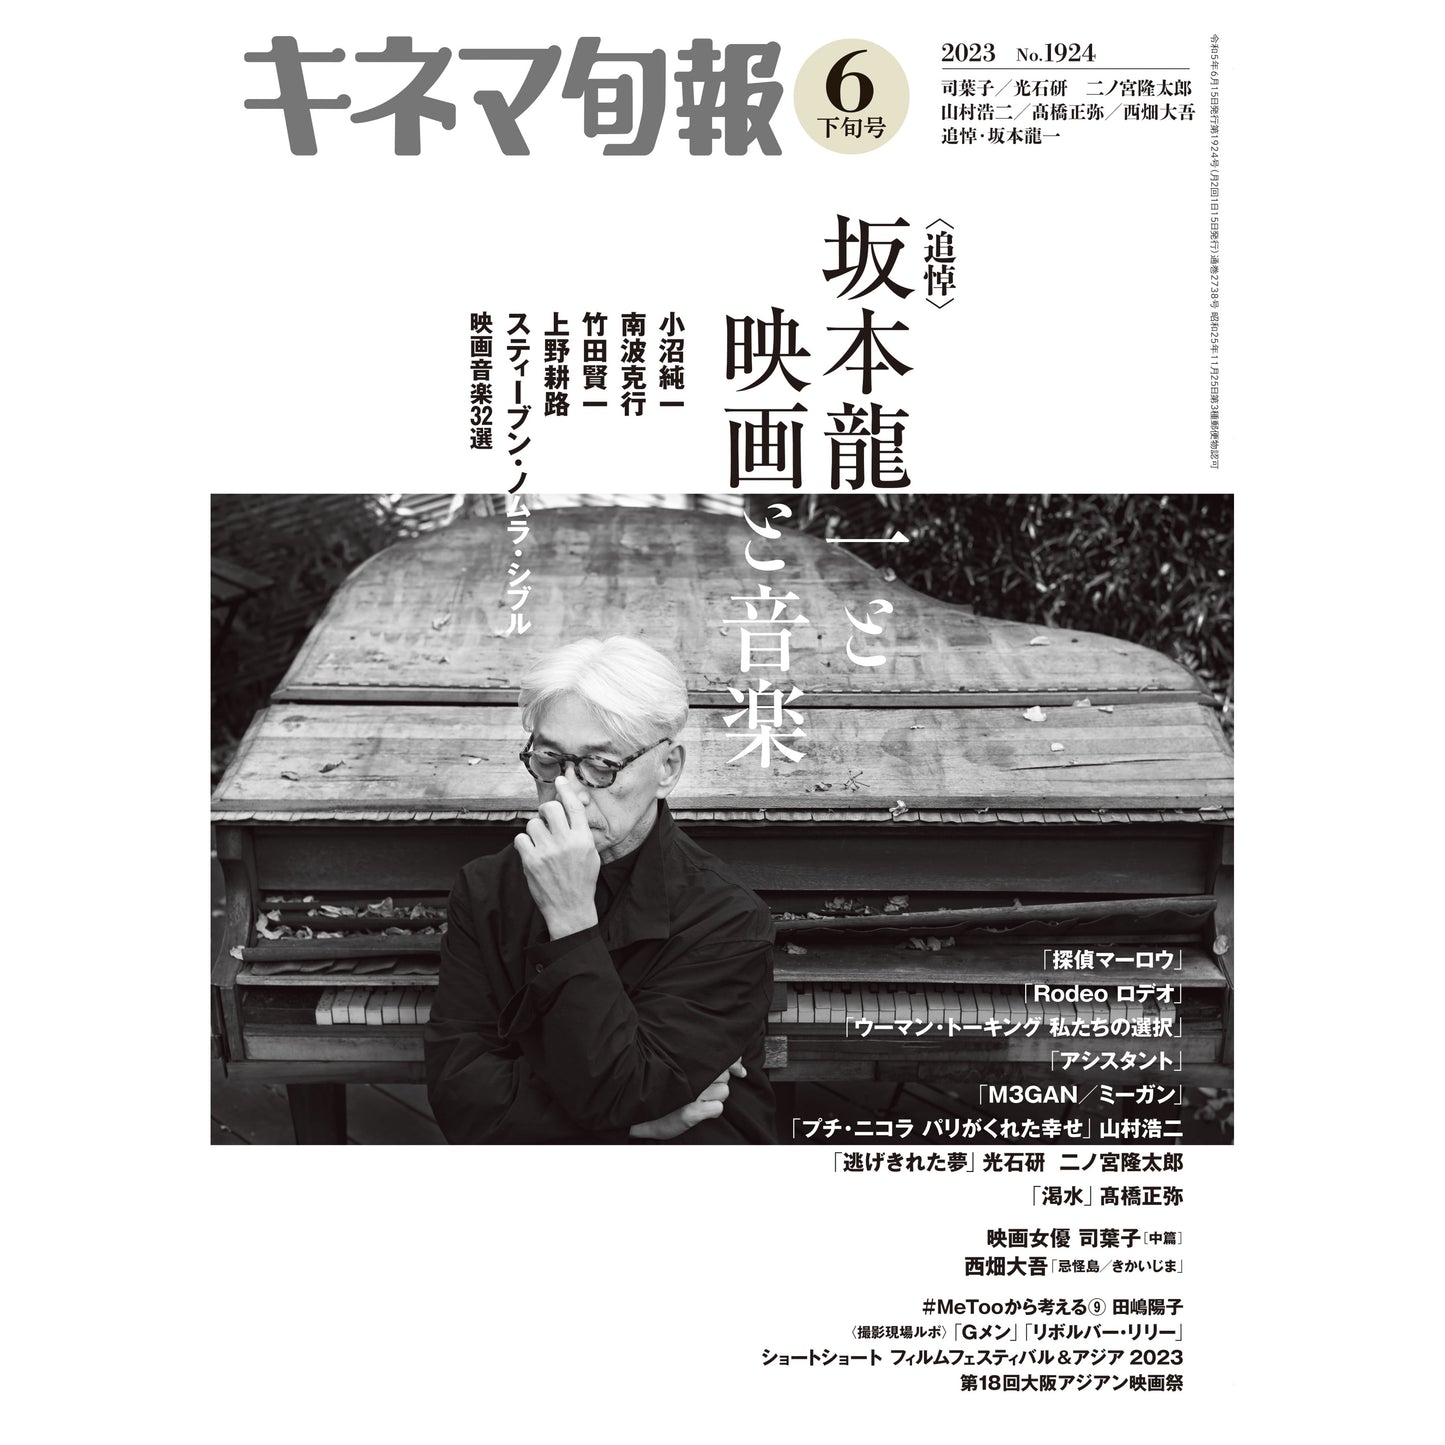 キネマ旬報 2023年6月下旬号 追悼・坂本龍一與他的電影和音楽